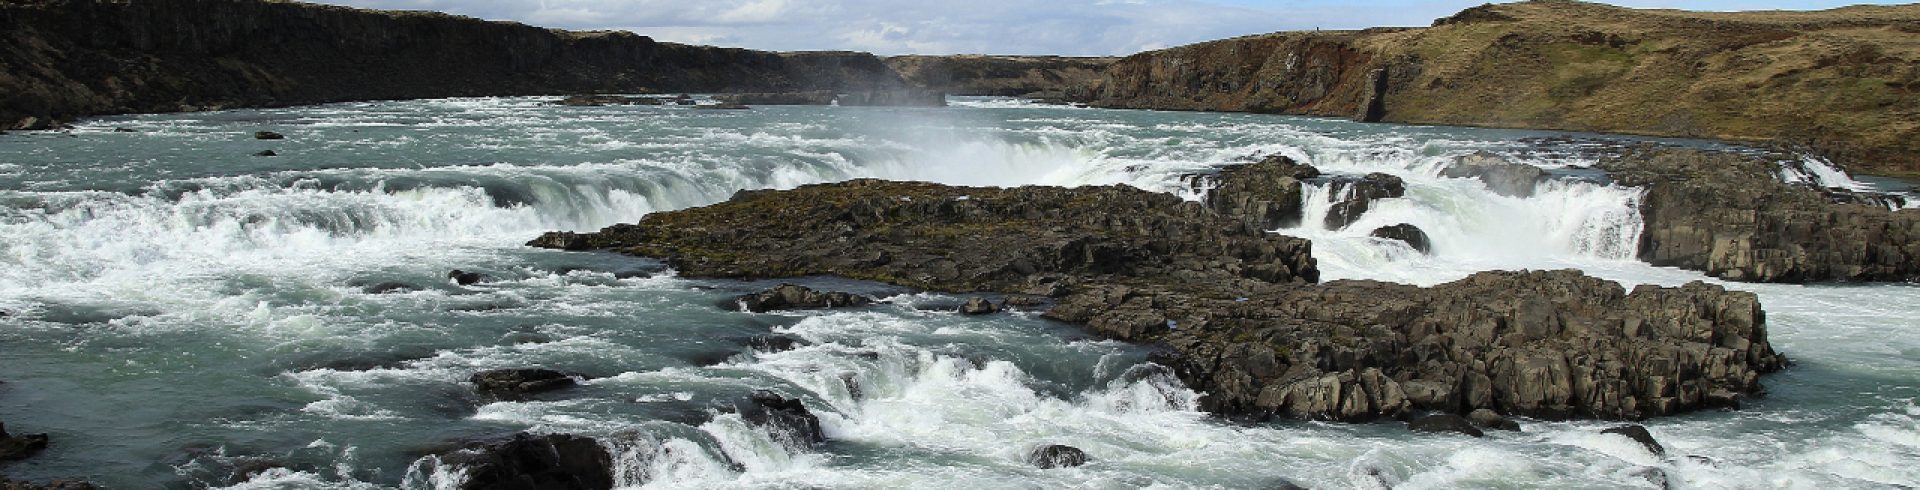 Urriðafoss er einn vatnsmesti foss landsins. Við endurskoðun 3. áfanga rammaáætlunar er lagt er til að hann fari í nýtingarflokk.